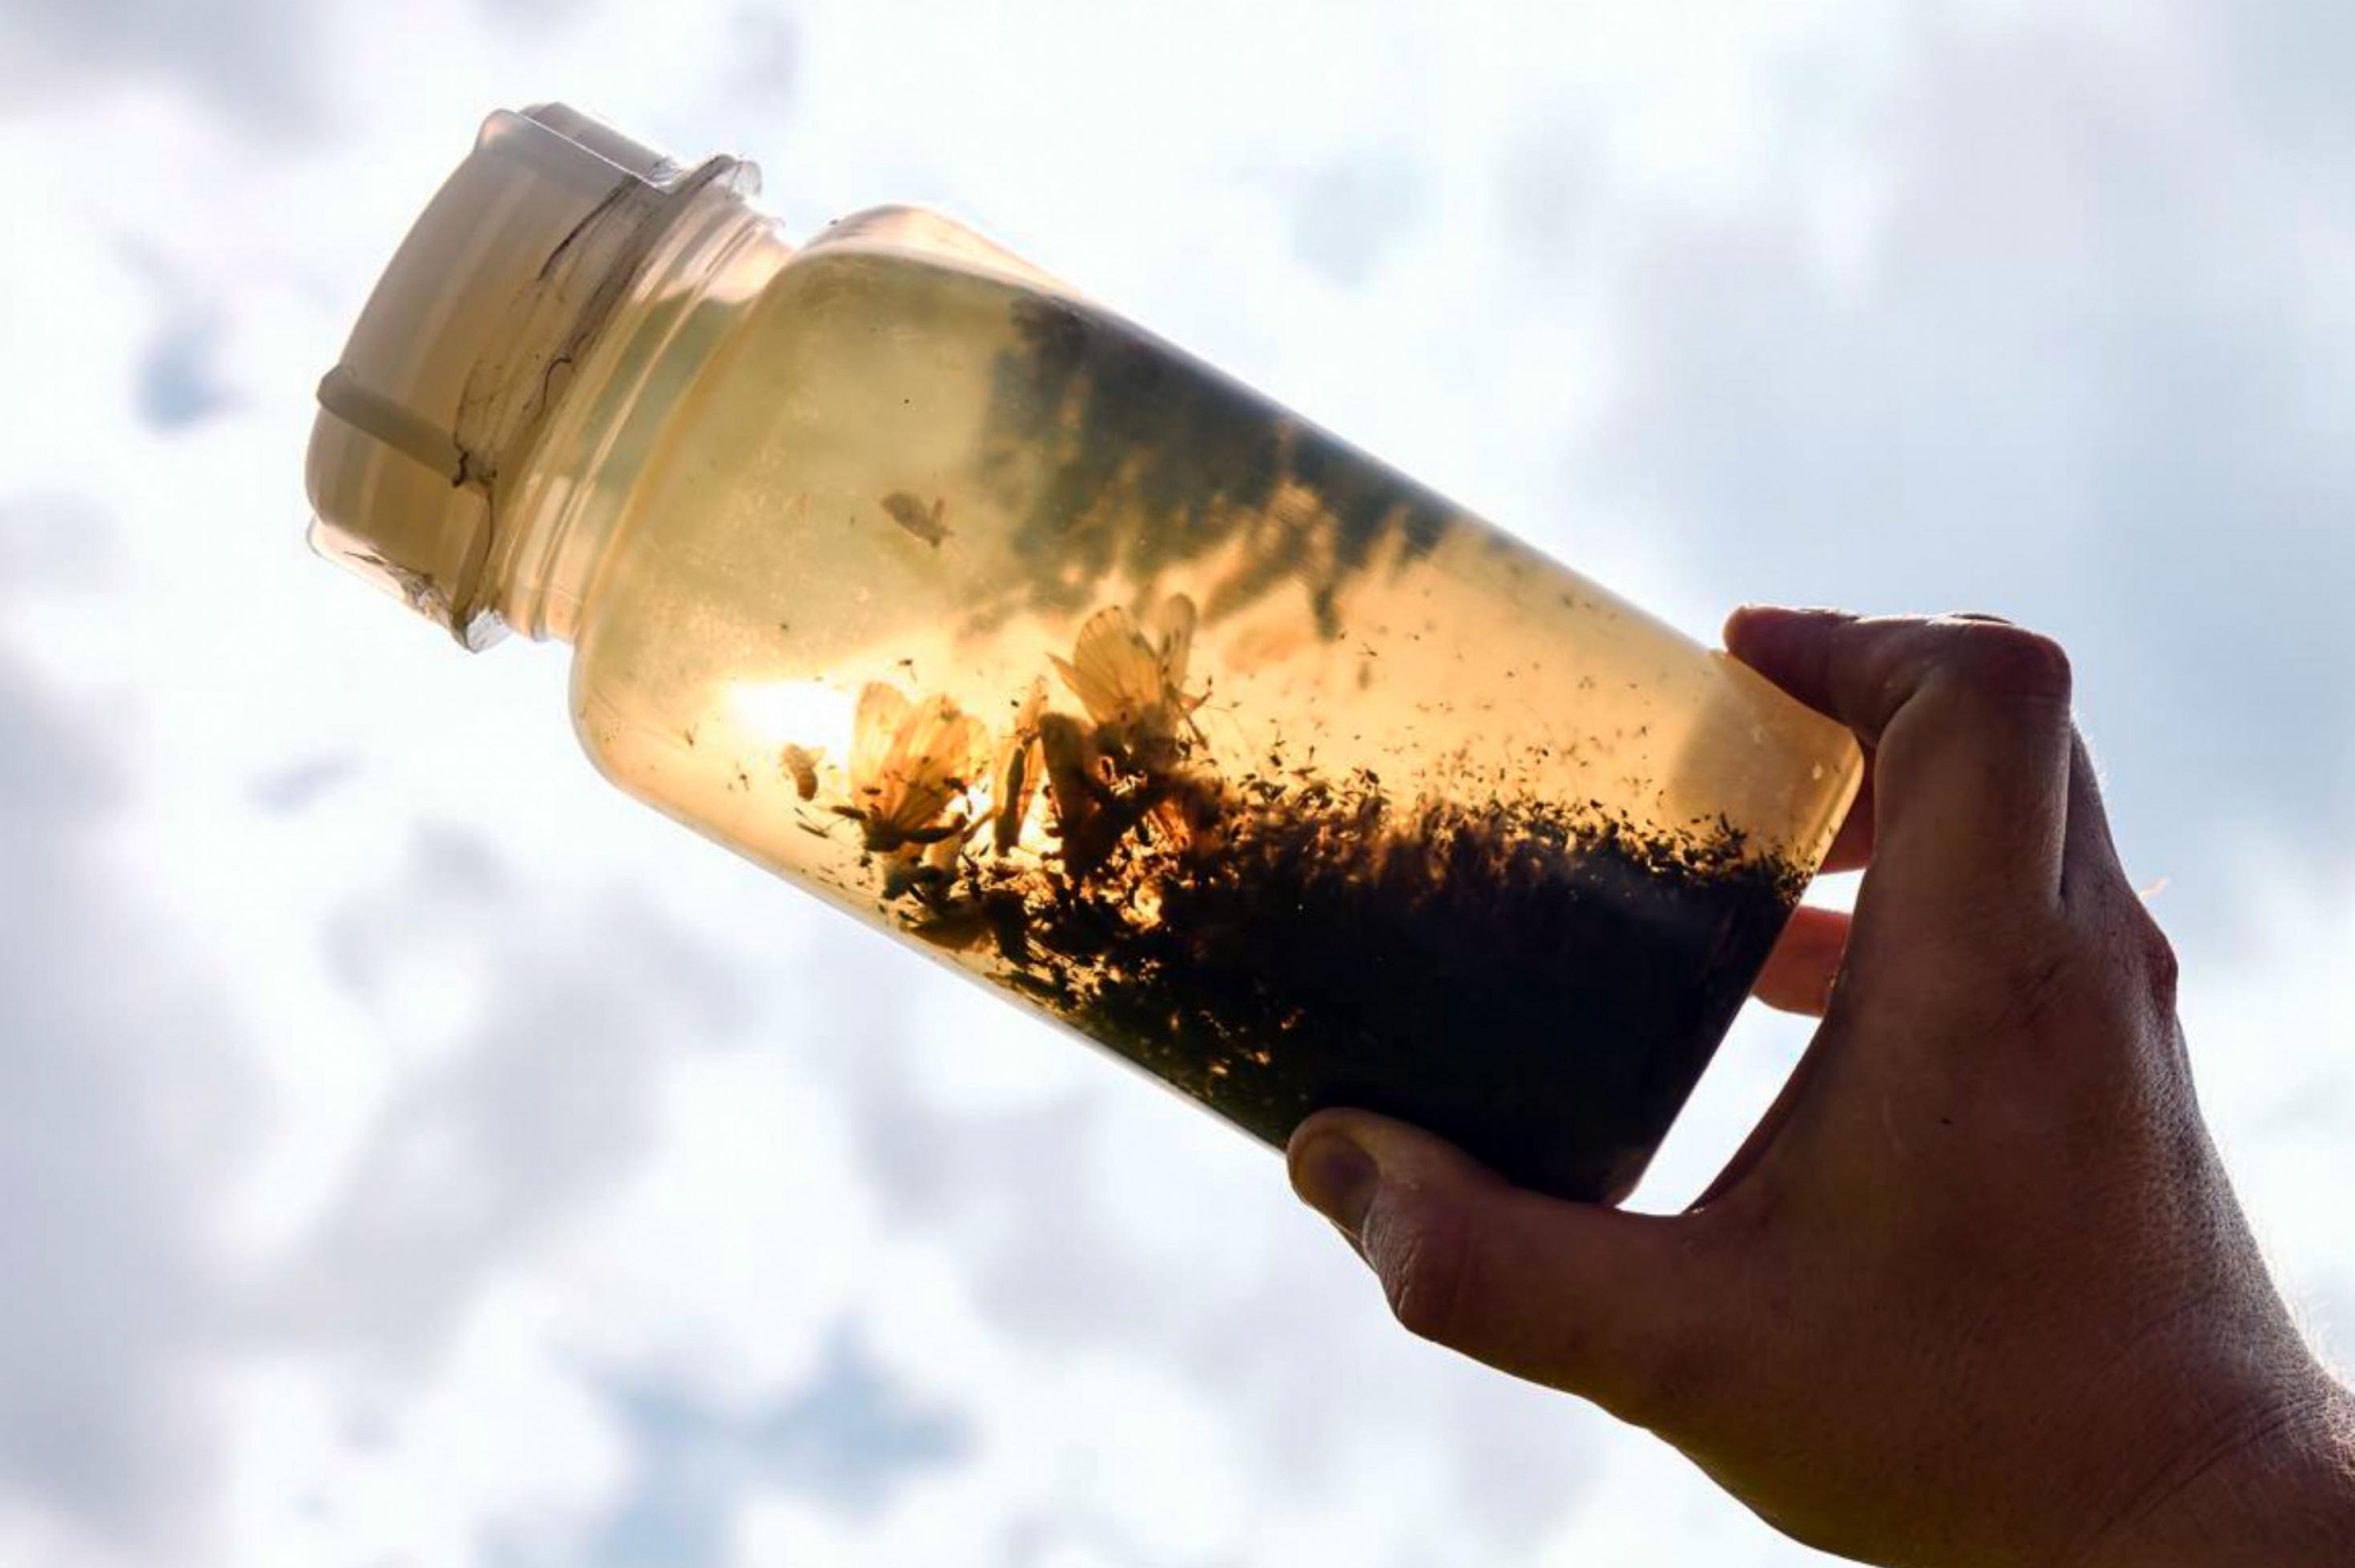 Eine durchsichtige Plastikflasche gefüllt mit braunem Alkohol und zahlreichen toten Insekten wird von einer Hand gegen die Sonne gehalten.